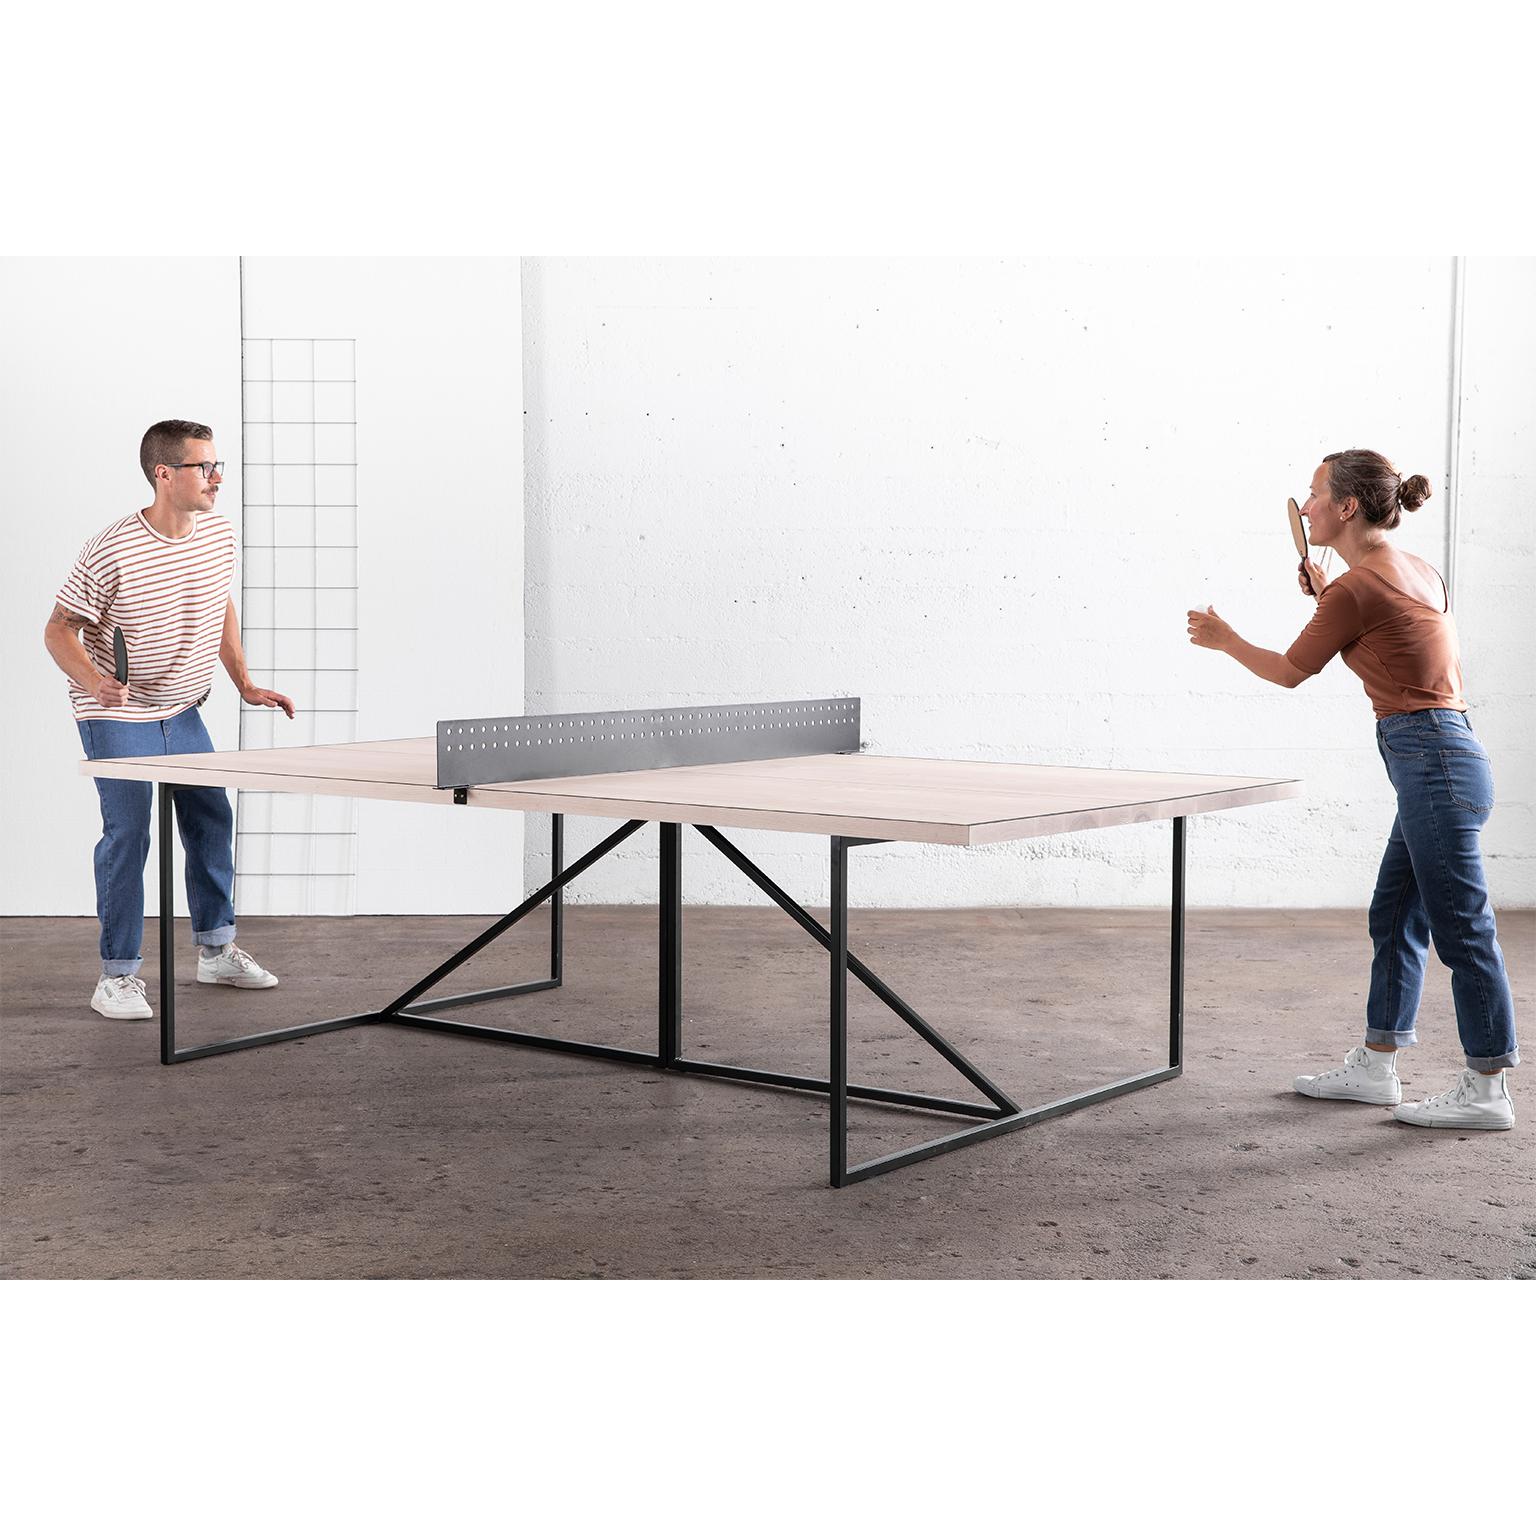 La table Break Ping Pong donne un aspect moderne à ce jeu de société classique.

Le cadre de la table est soudé à la main à partir d'un acier durable et peut être fini dans l'une de nos trois options de métal. La table est divisée par un filet